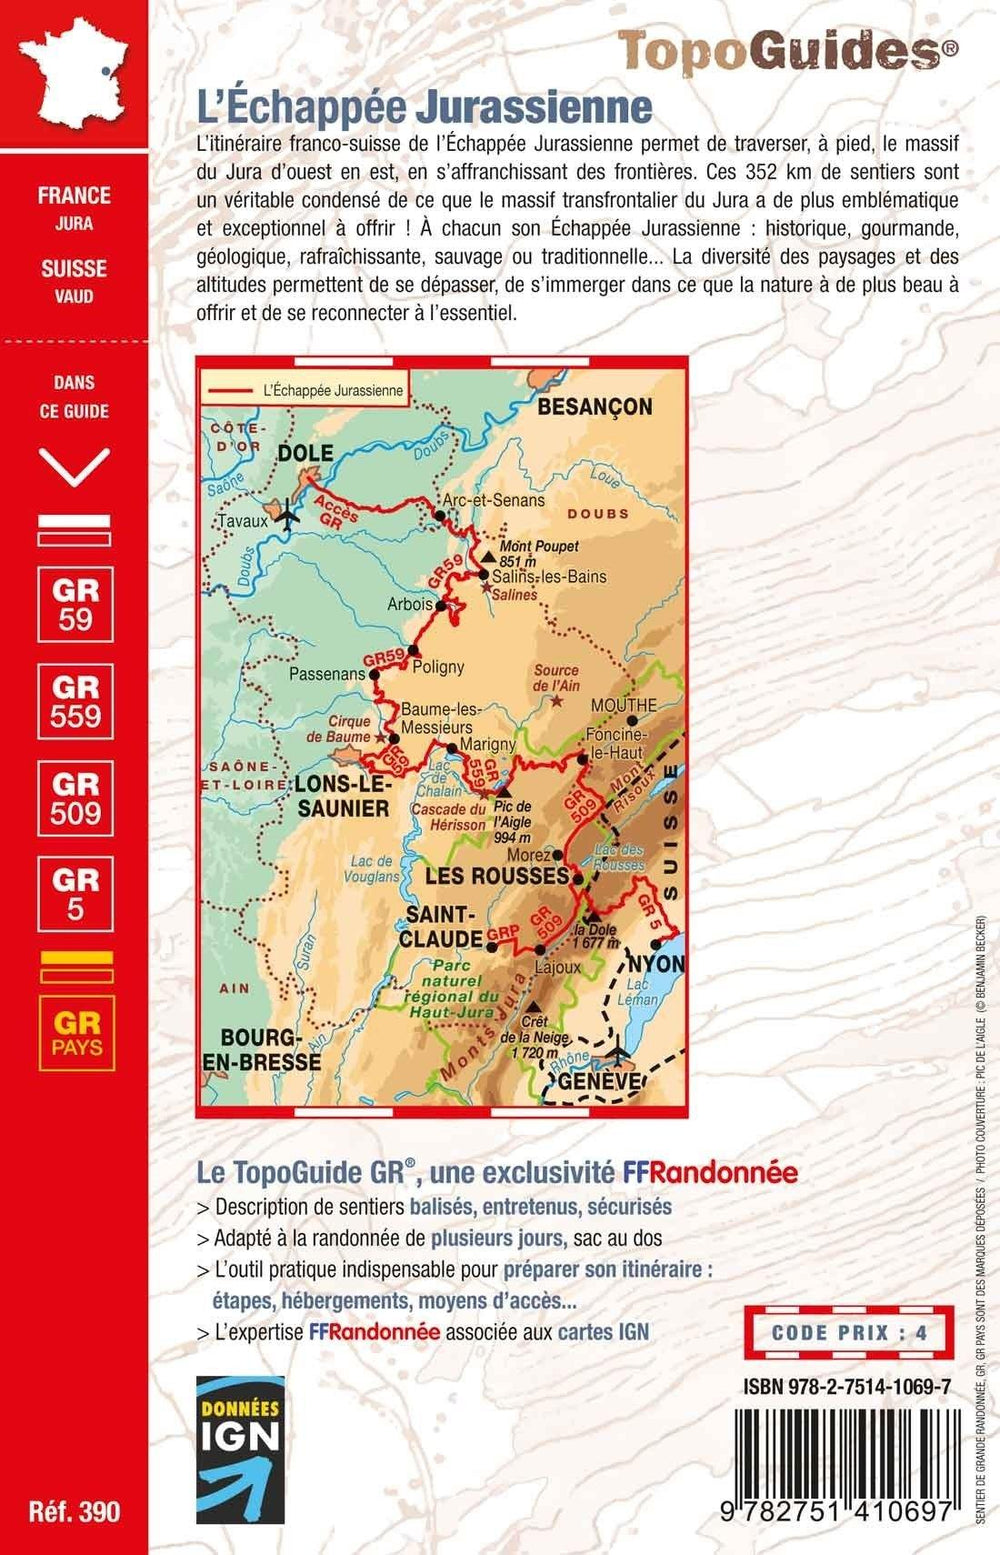 Topoguide de randonnée - L'échappée Jurassienne GR59, 59A, 559, 509 | FFR guide de randonnée FFR - Fédération Française de Randonnée 